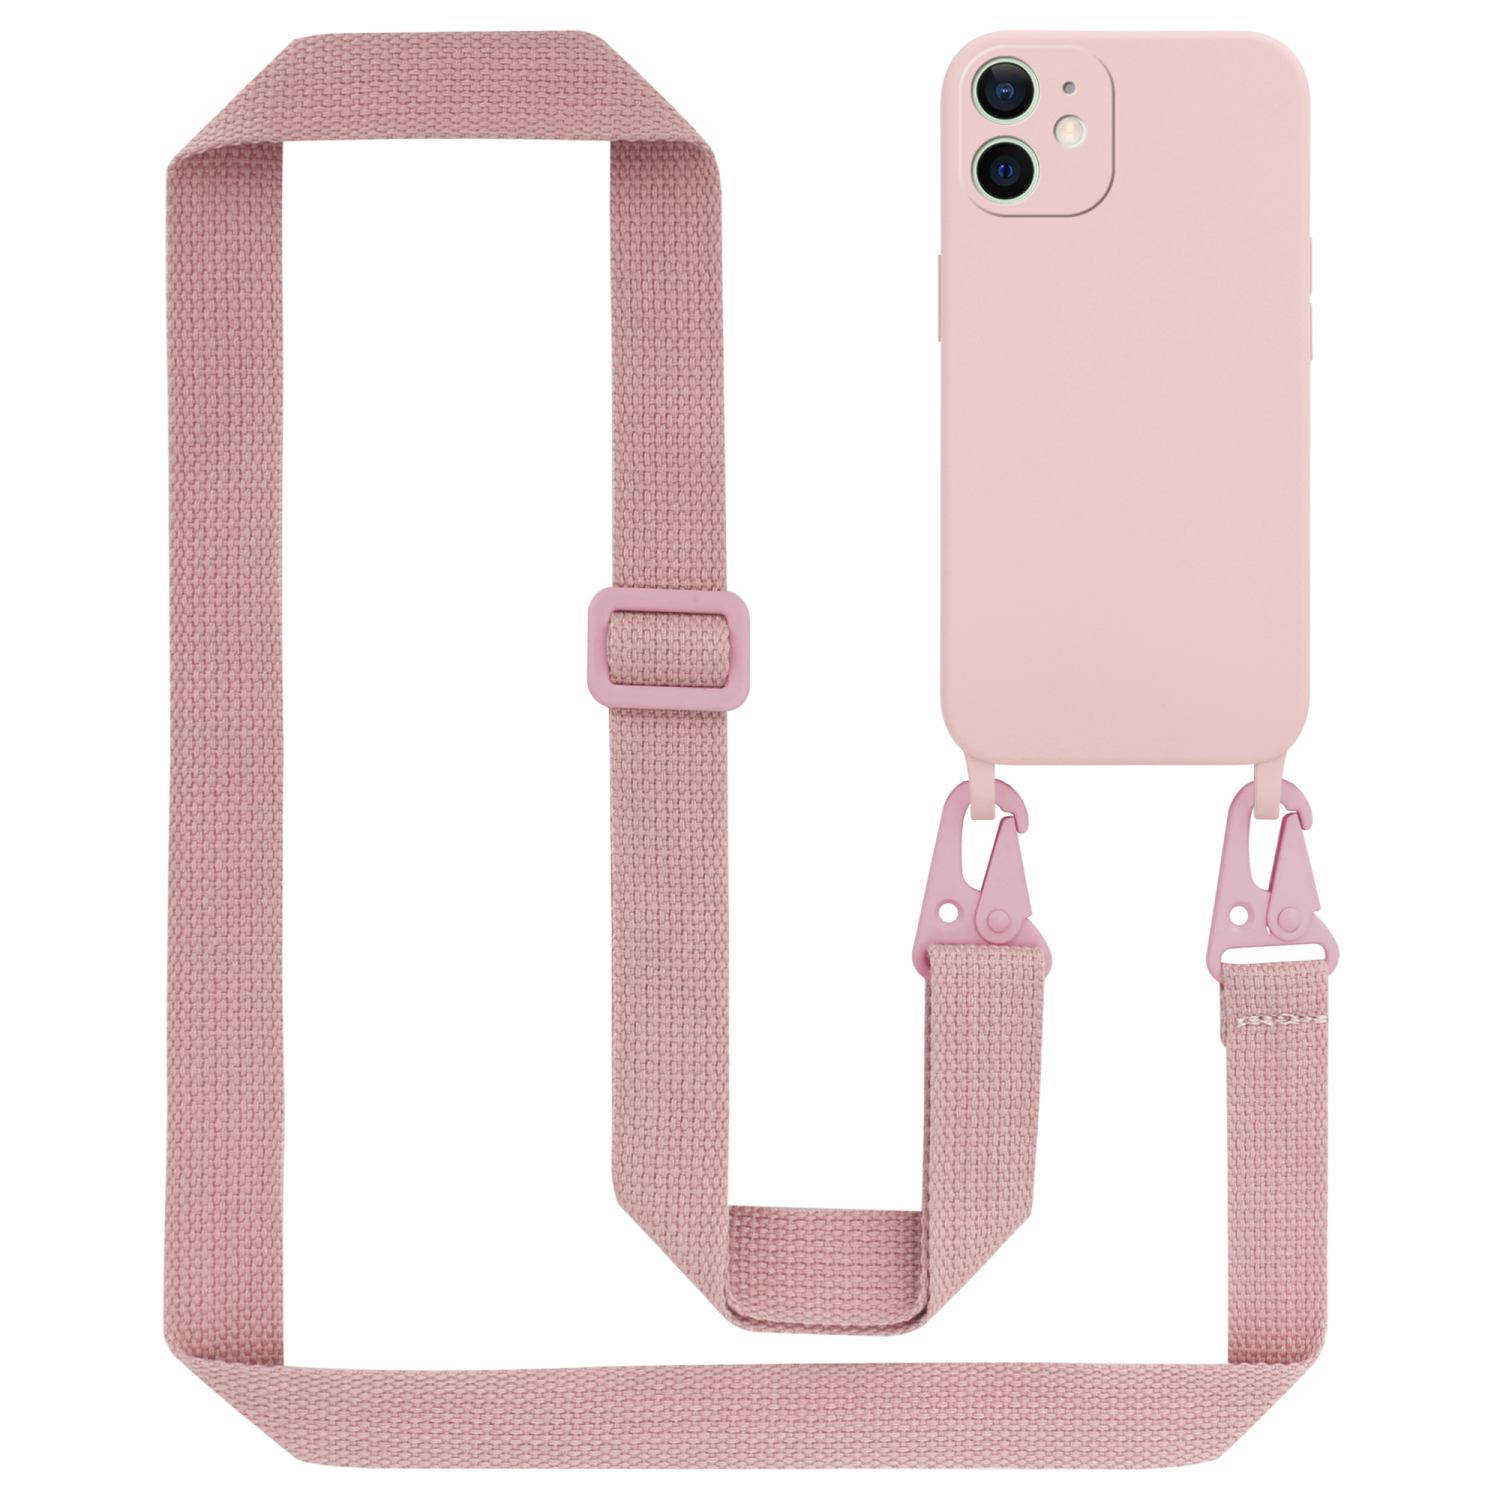 Cadorabo Mobiele telefoon ketting voor Apple iPhone 12 MINI in LIQUID ROZE - Silicone beschermhoes met lengte verstelbare koord riem